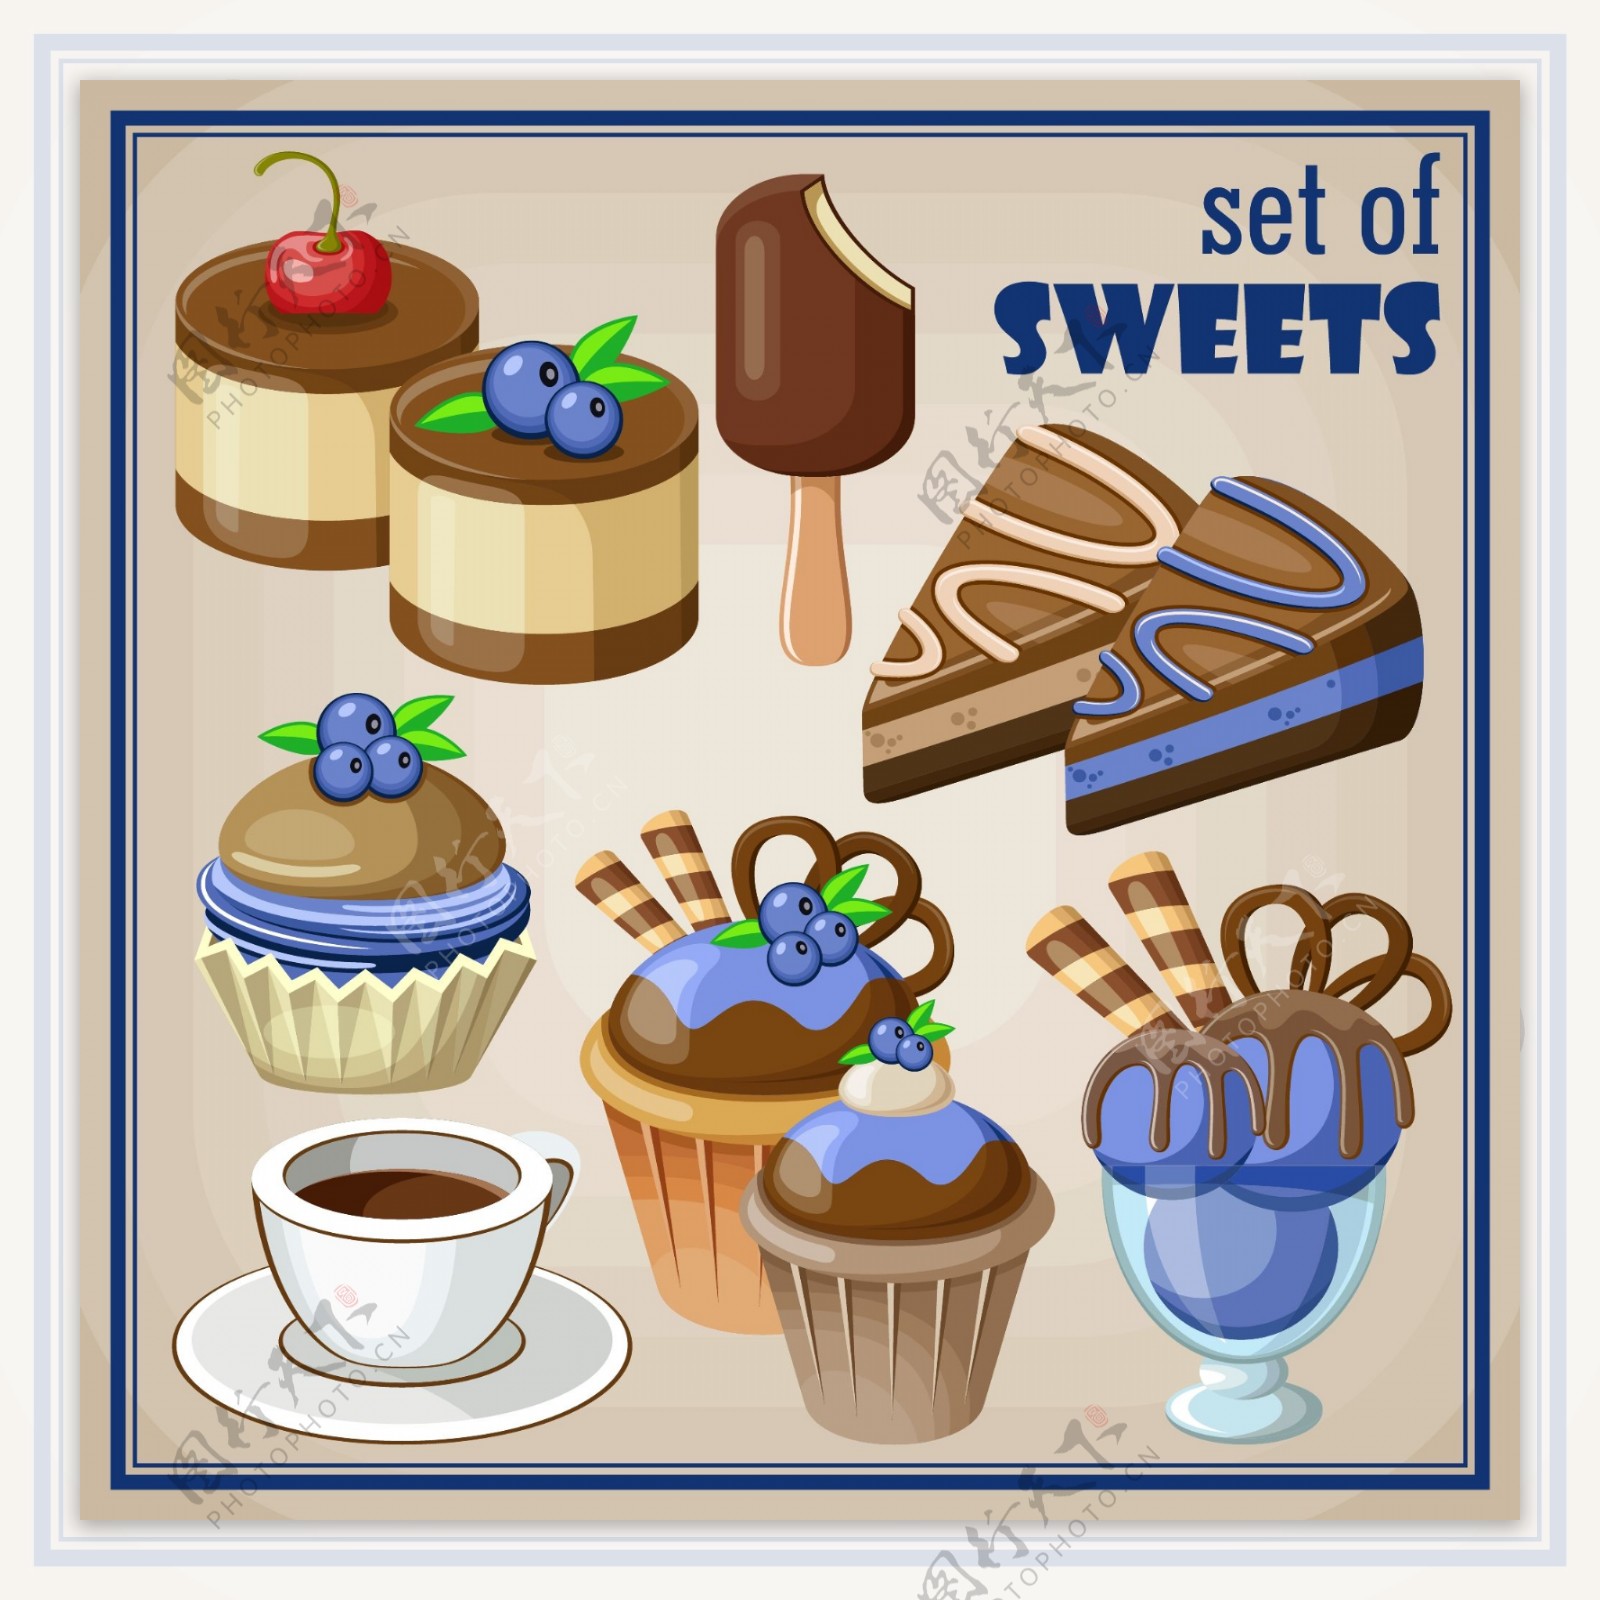 蓝莓巧克力蛋糕插画